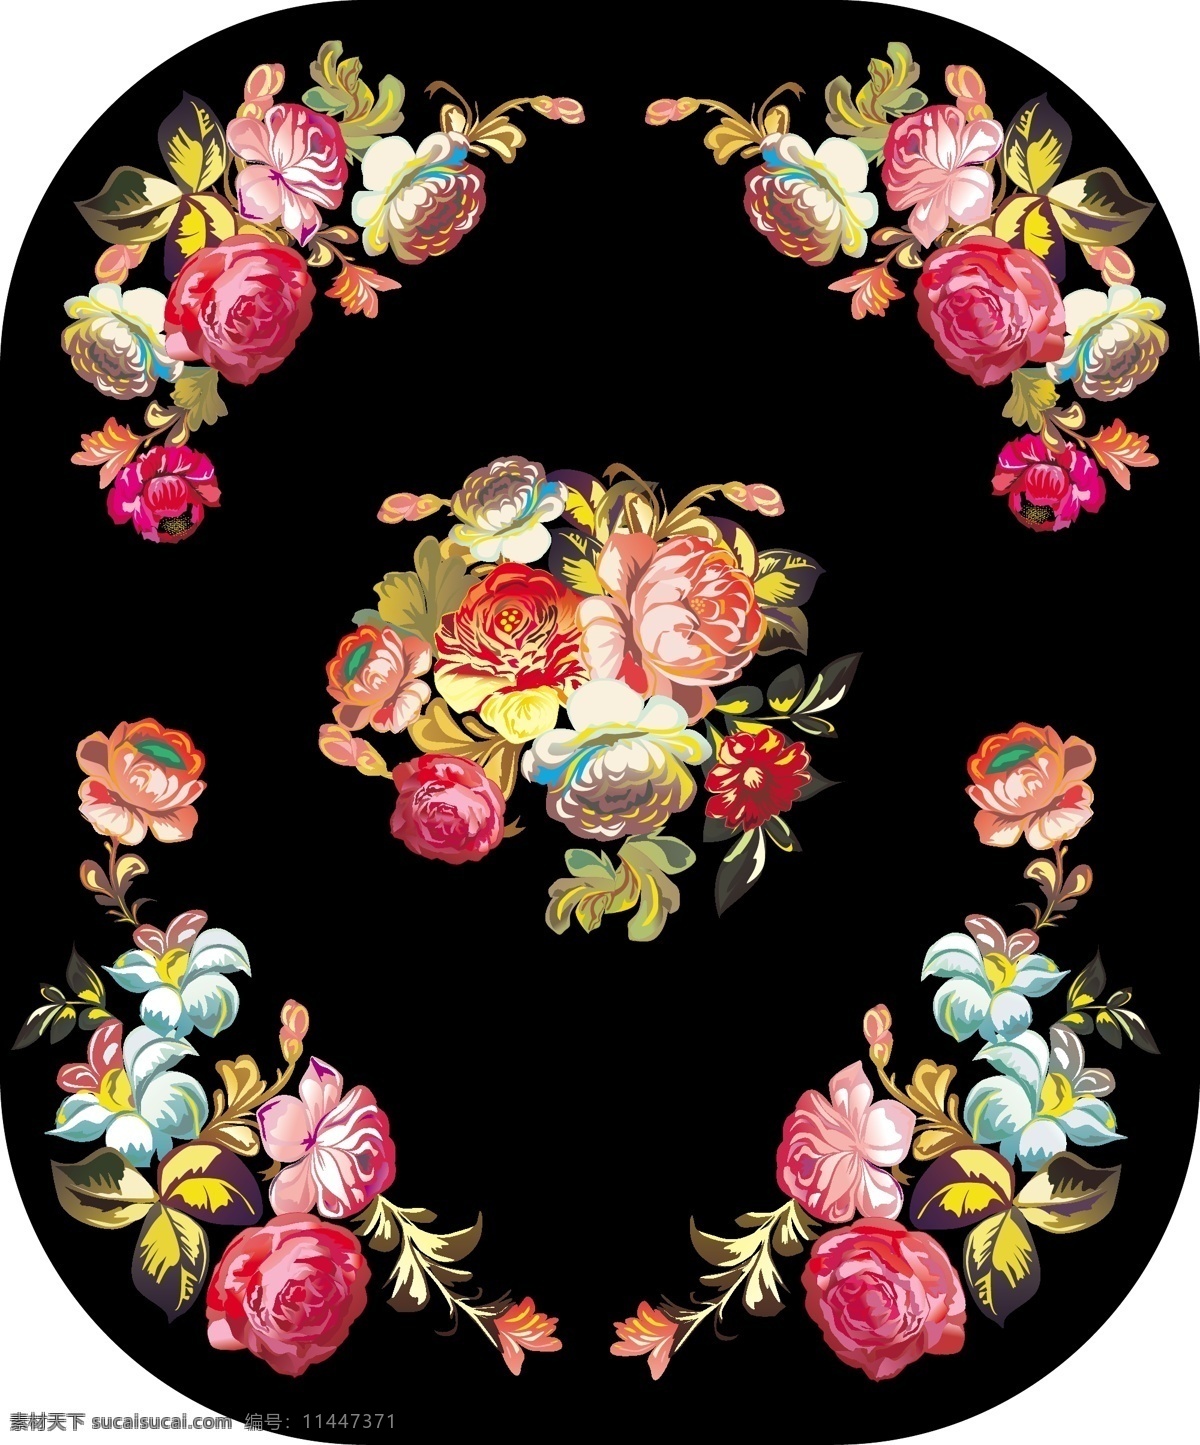 传统 花卉 装饰 边框 矢量 eps格式 牡丹 装饰边框 家居装饰素材